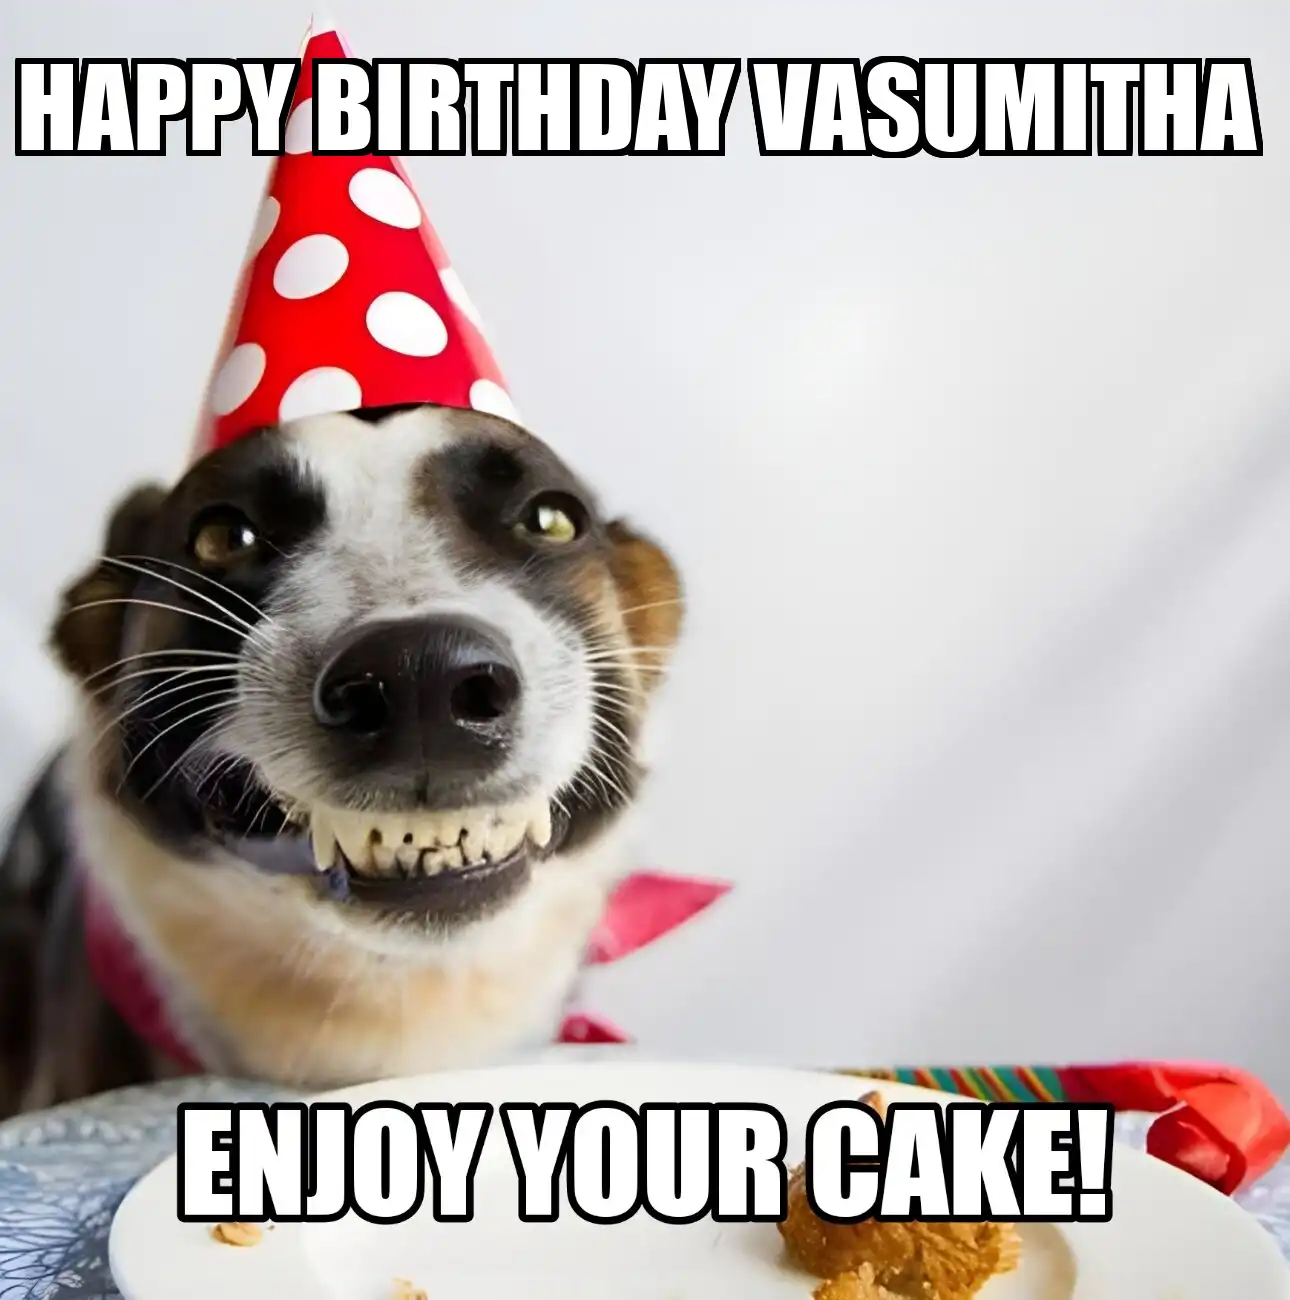 Happy Birthday Vasumitha Enjoy Your Cake Dog Meme